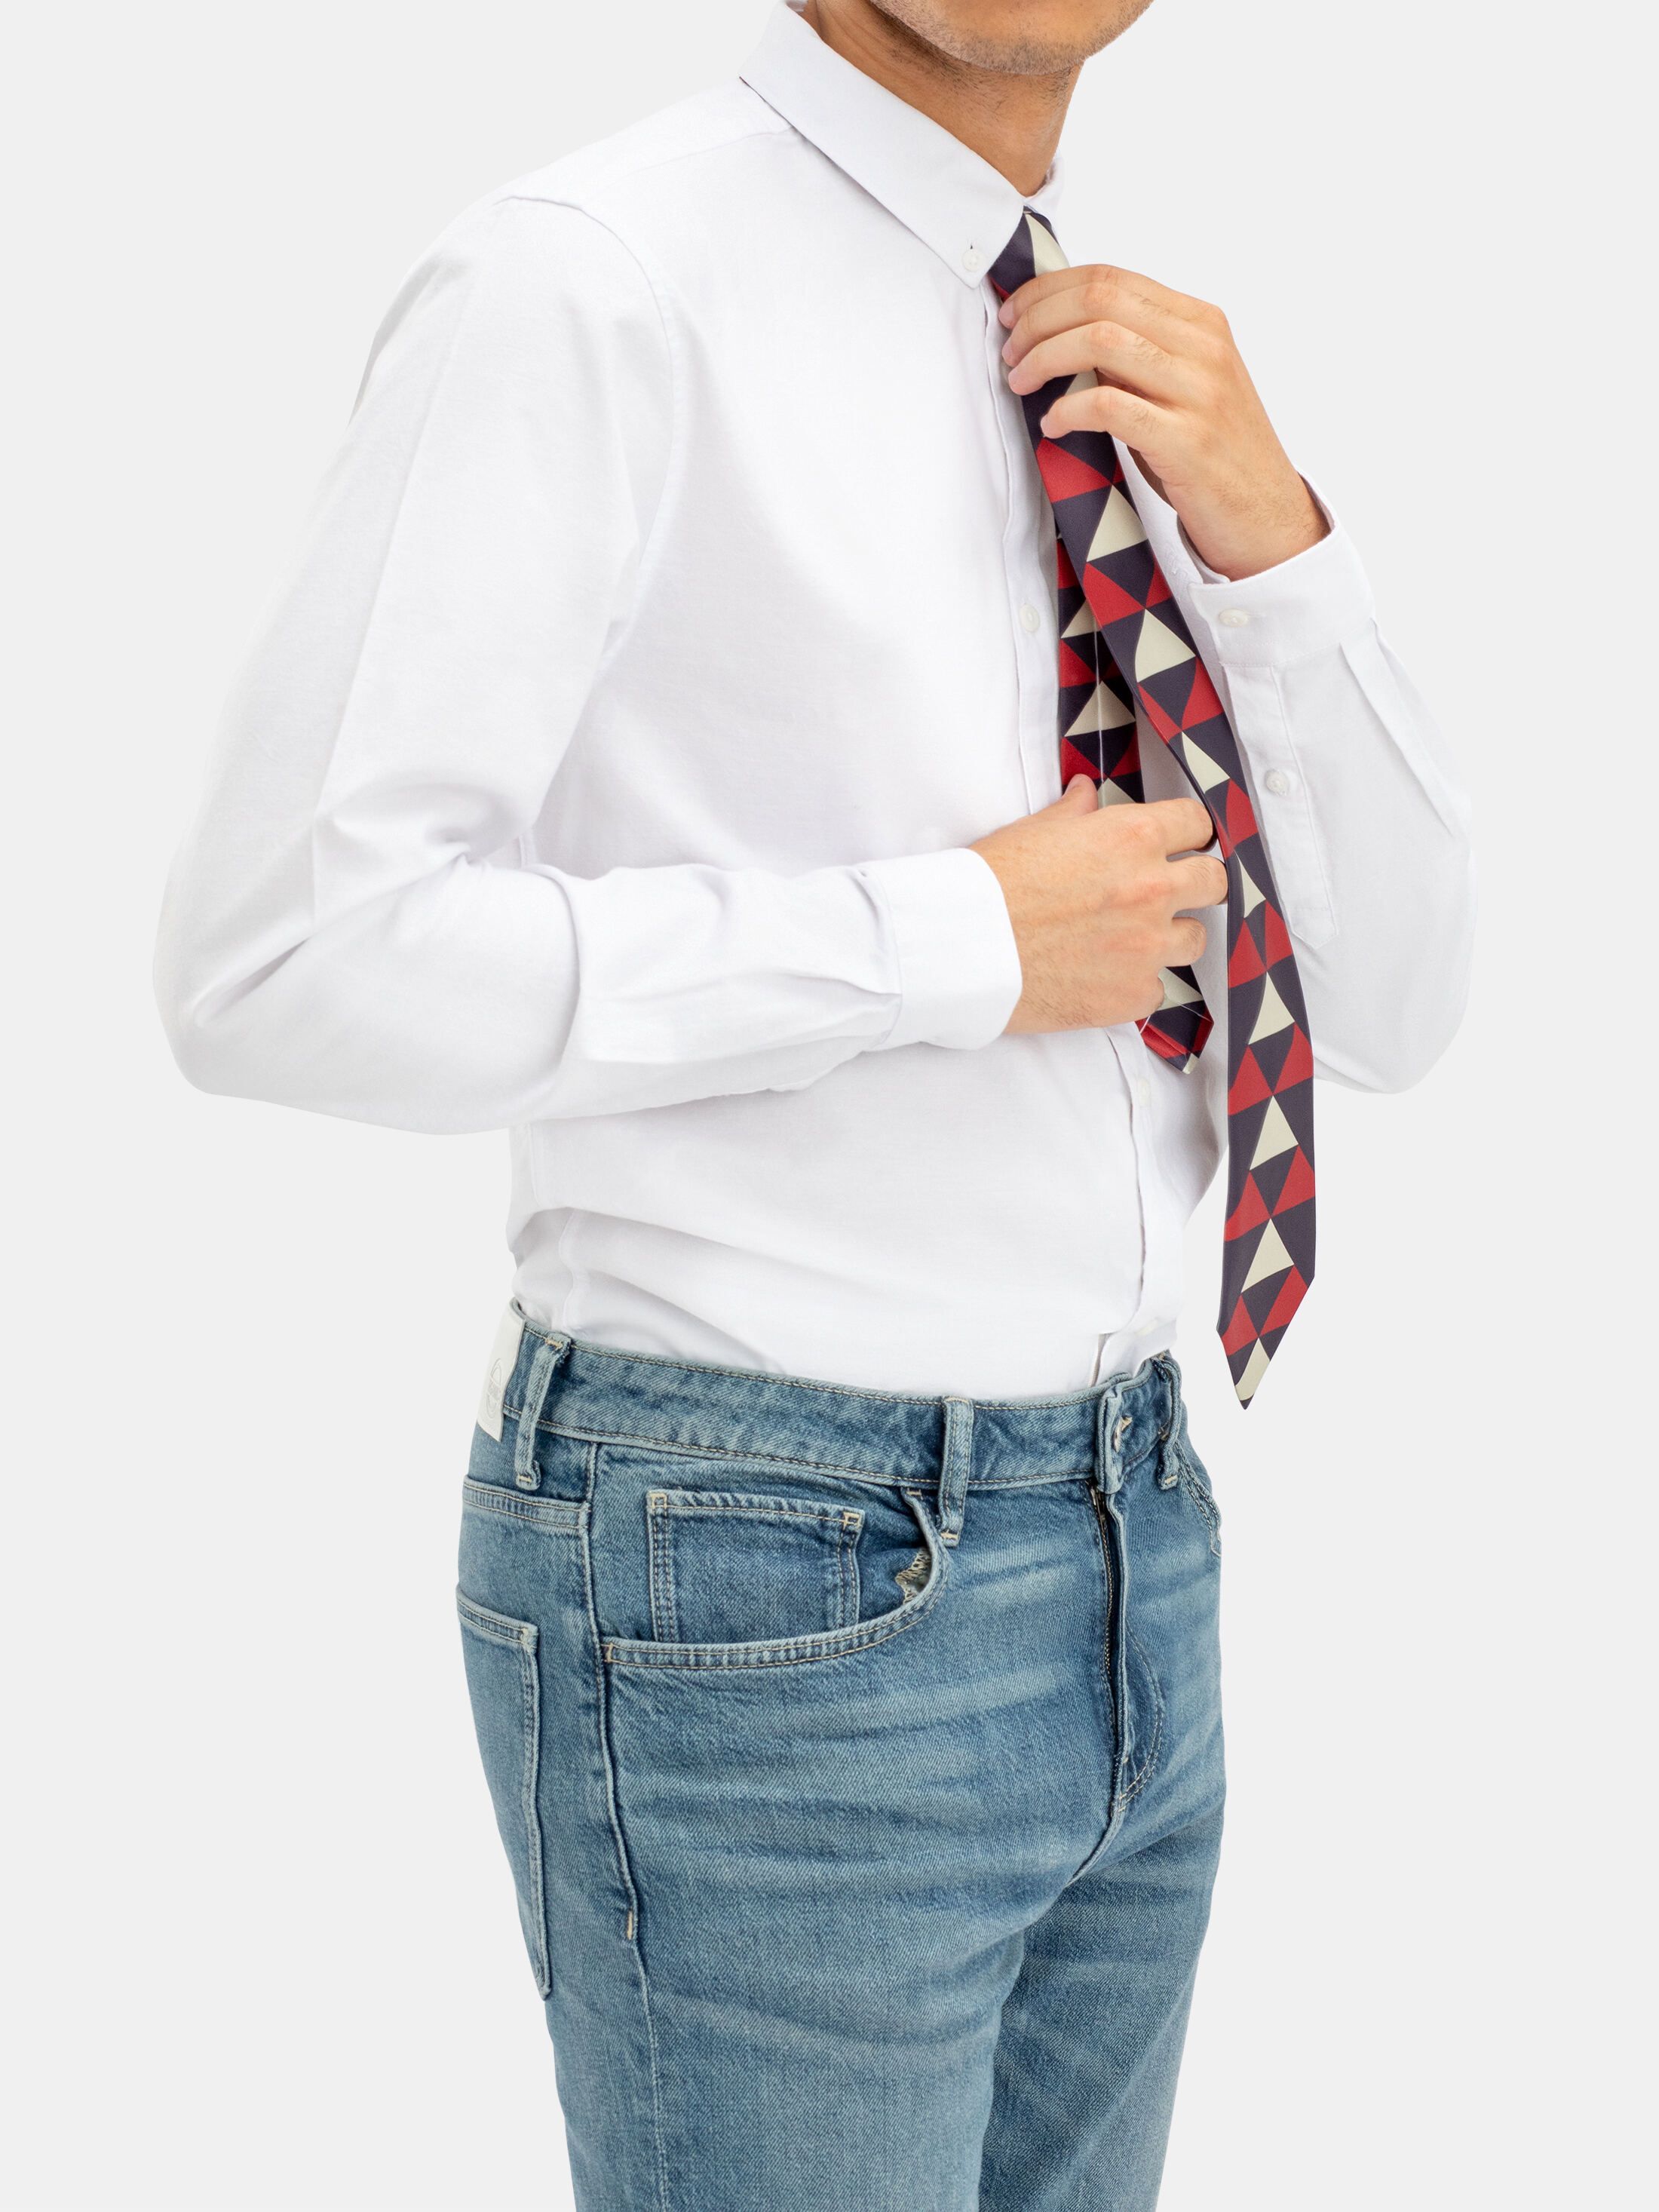 dunne of brede stropdassen